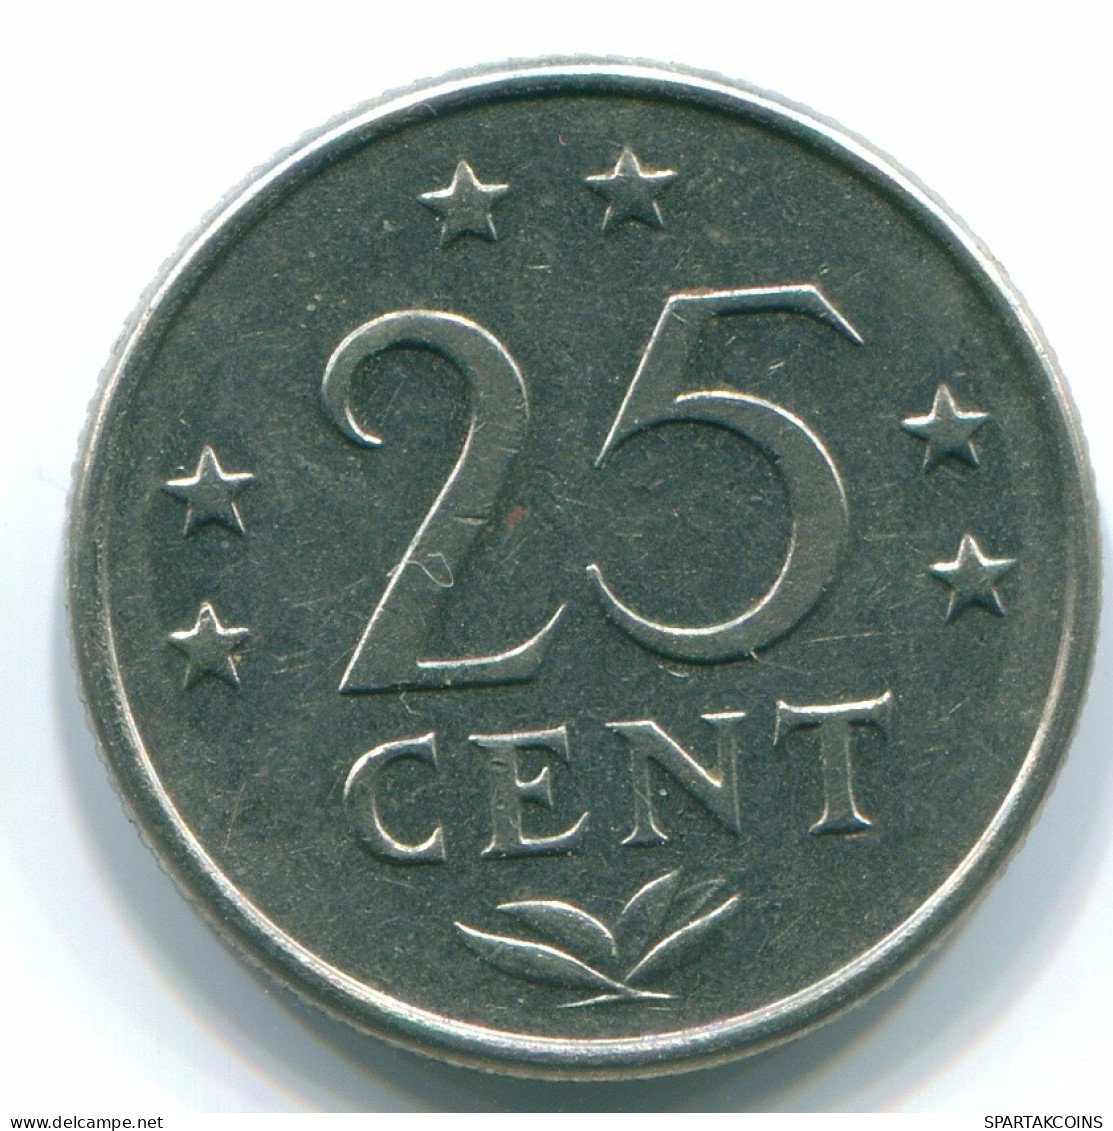 25 CENTS 1970 NIEDERLÄNDISCHE ANTILLEN Nickel Koloniale Münze #S11443.D.A - Antilles Néerlandaises